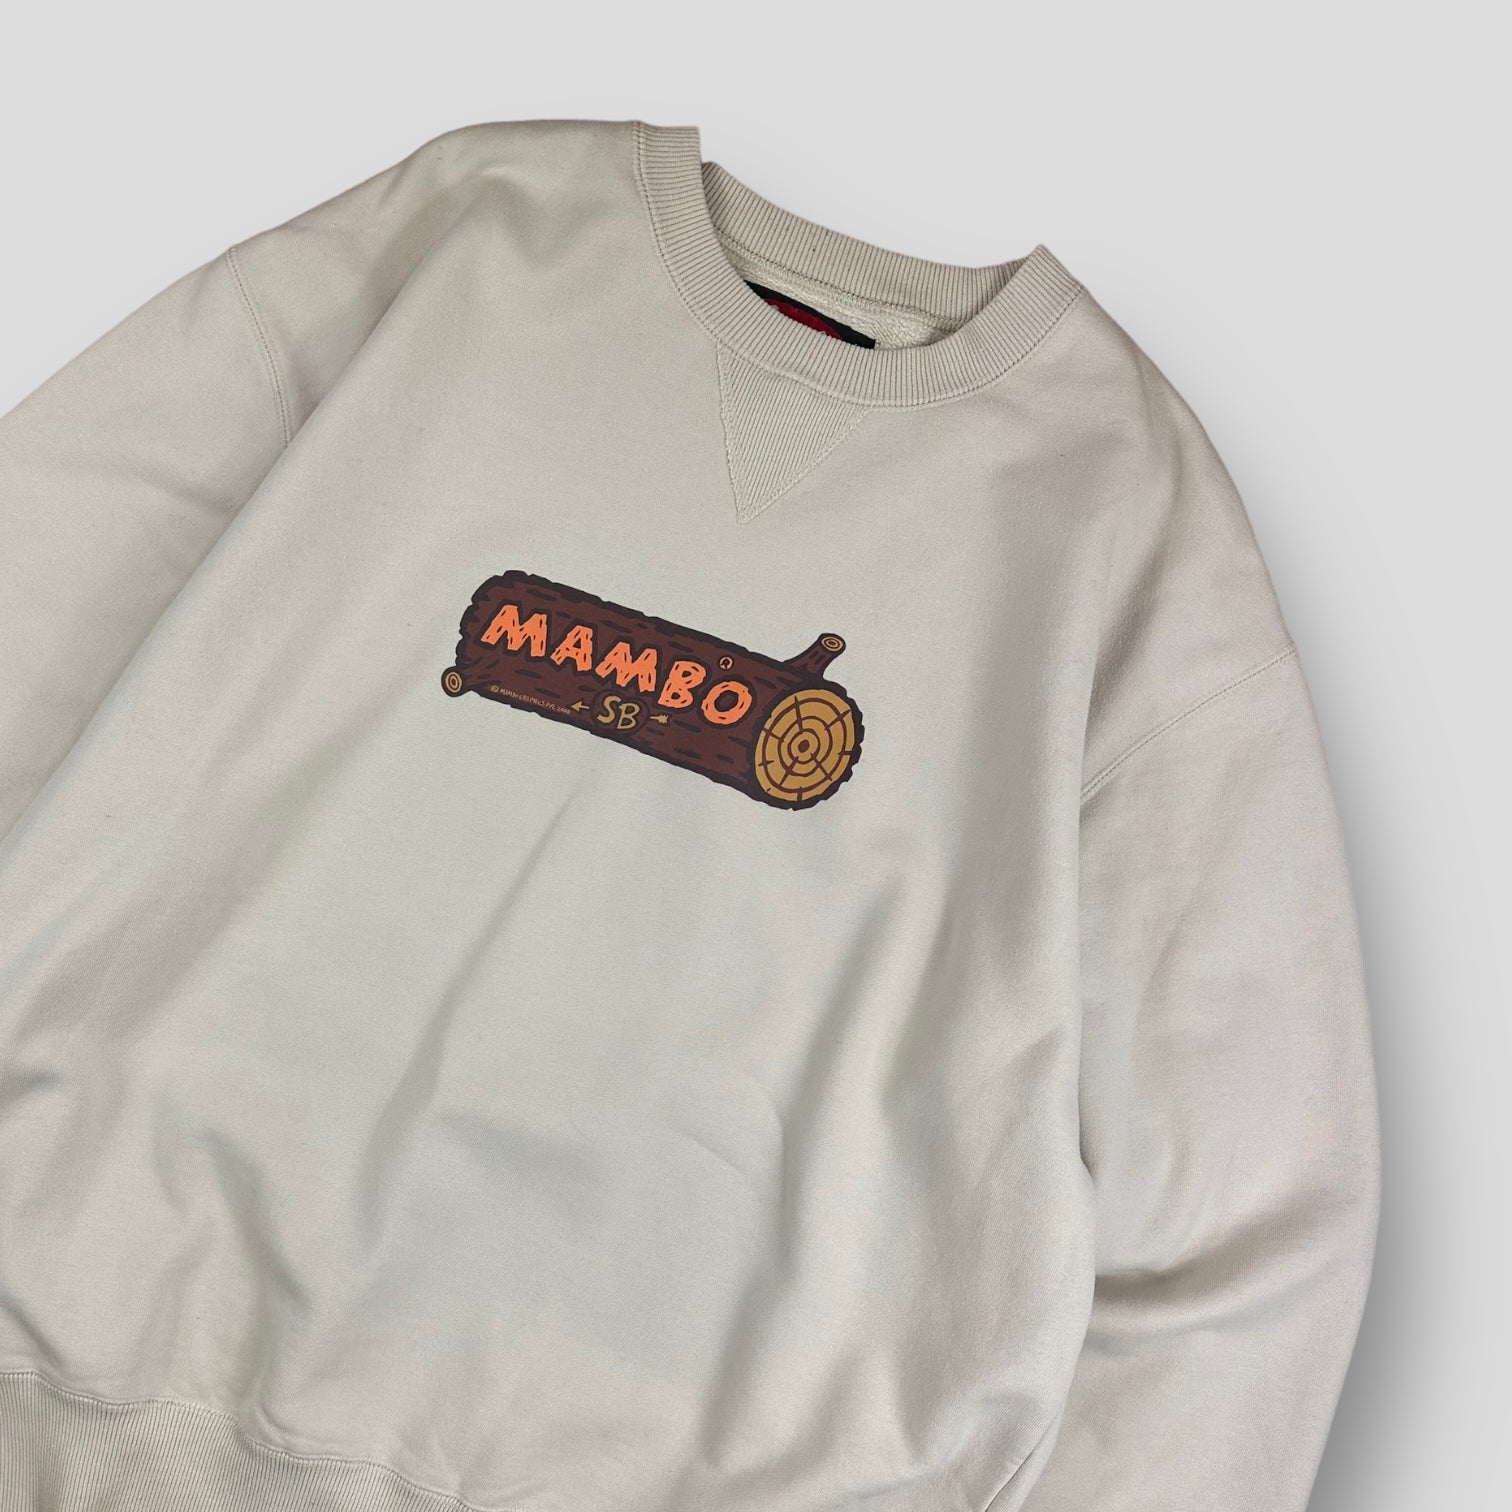 Mambo hoodie